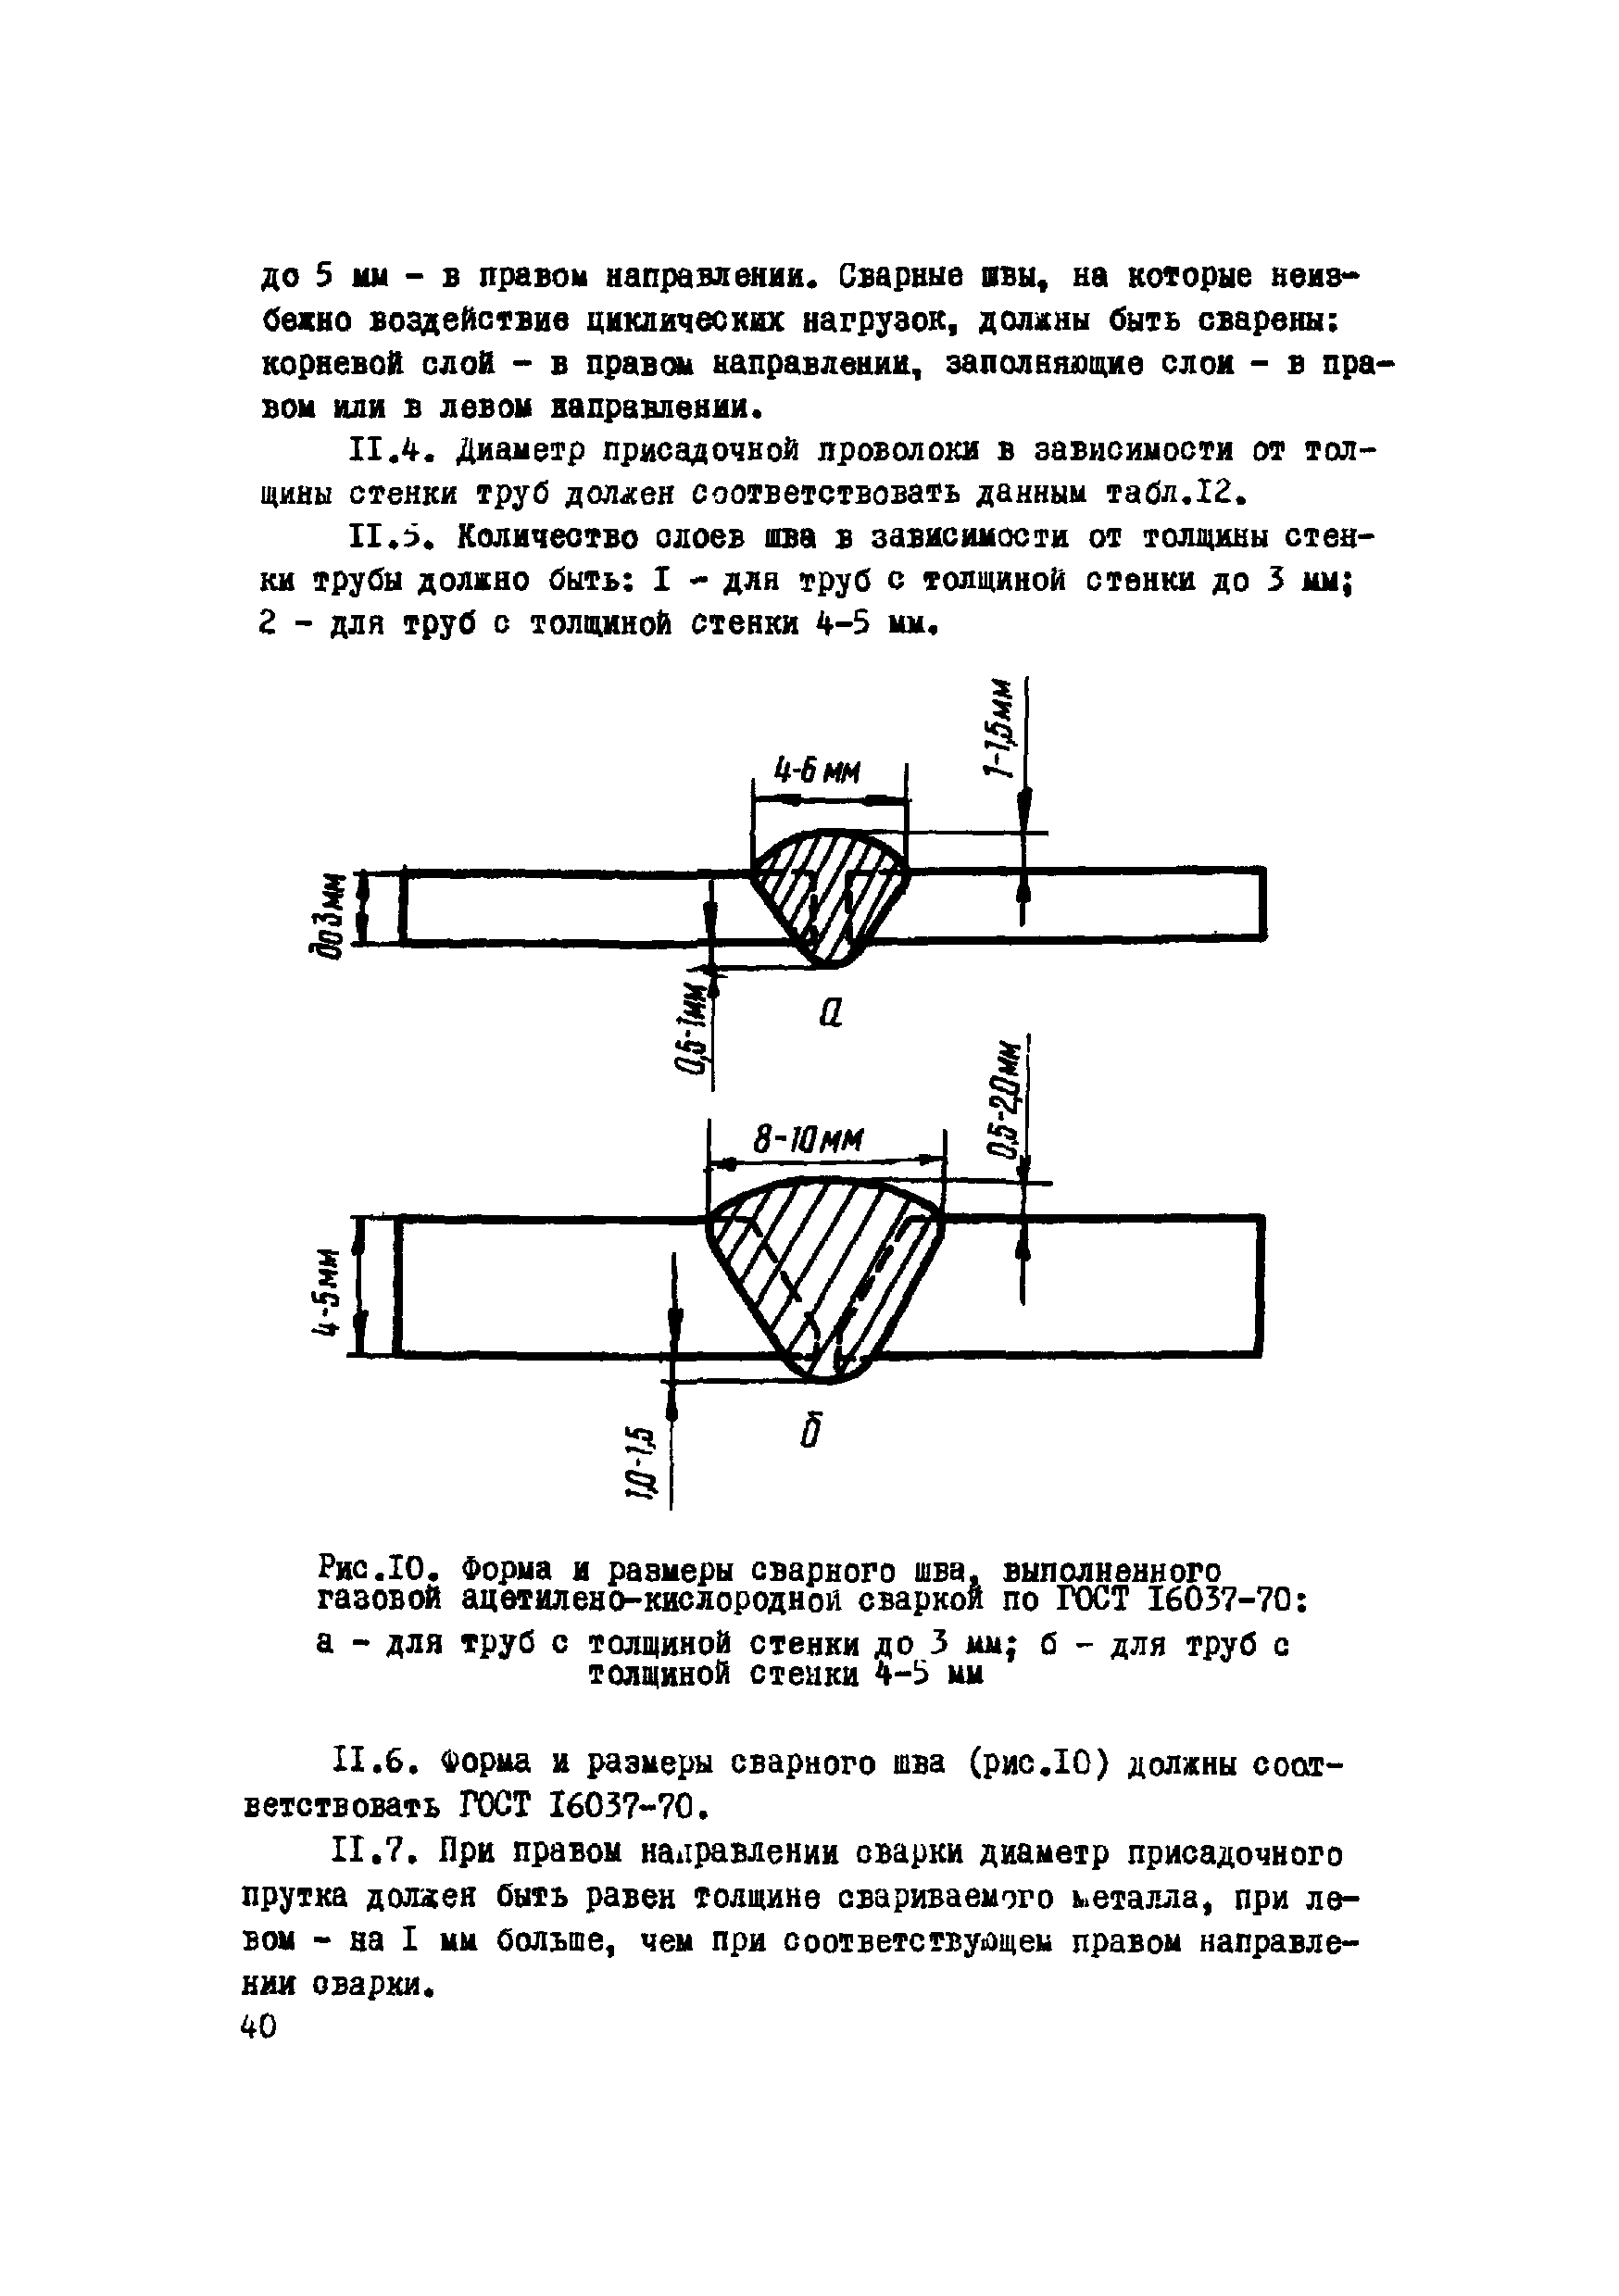 ВСН 2-120-80/Миннефтегазстрой